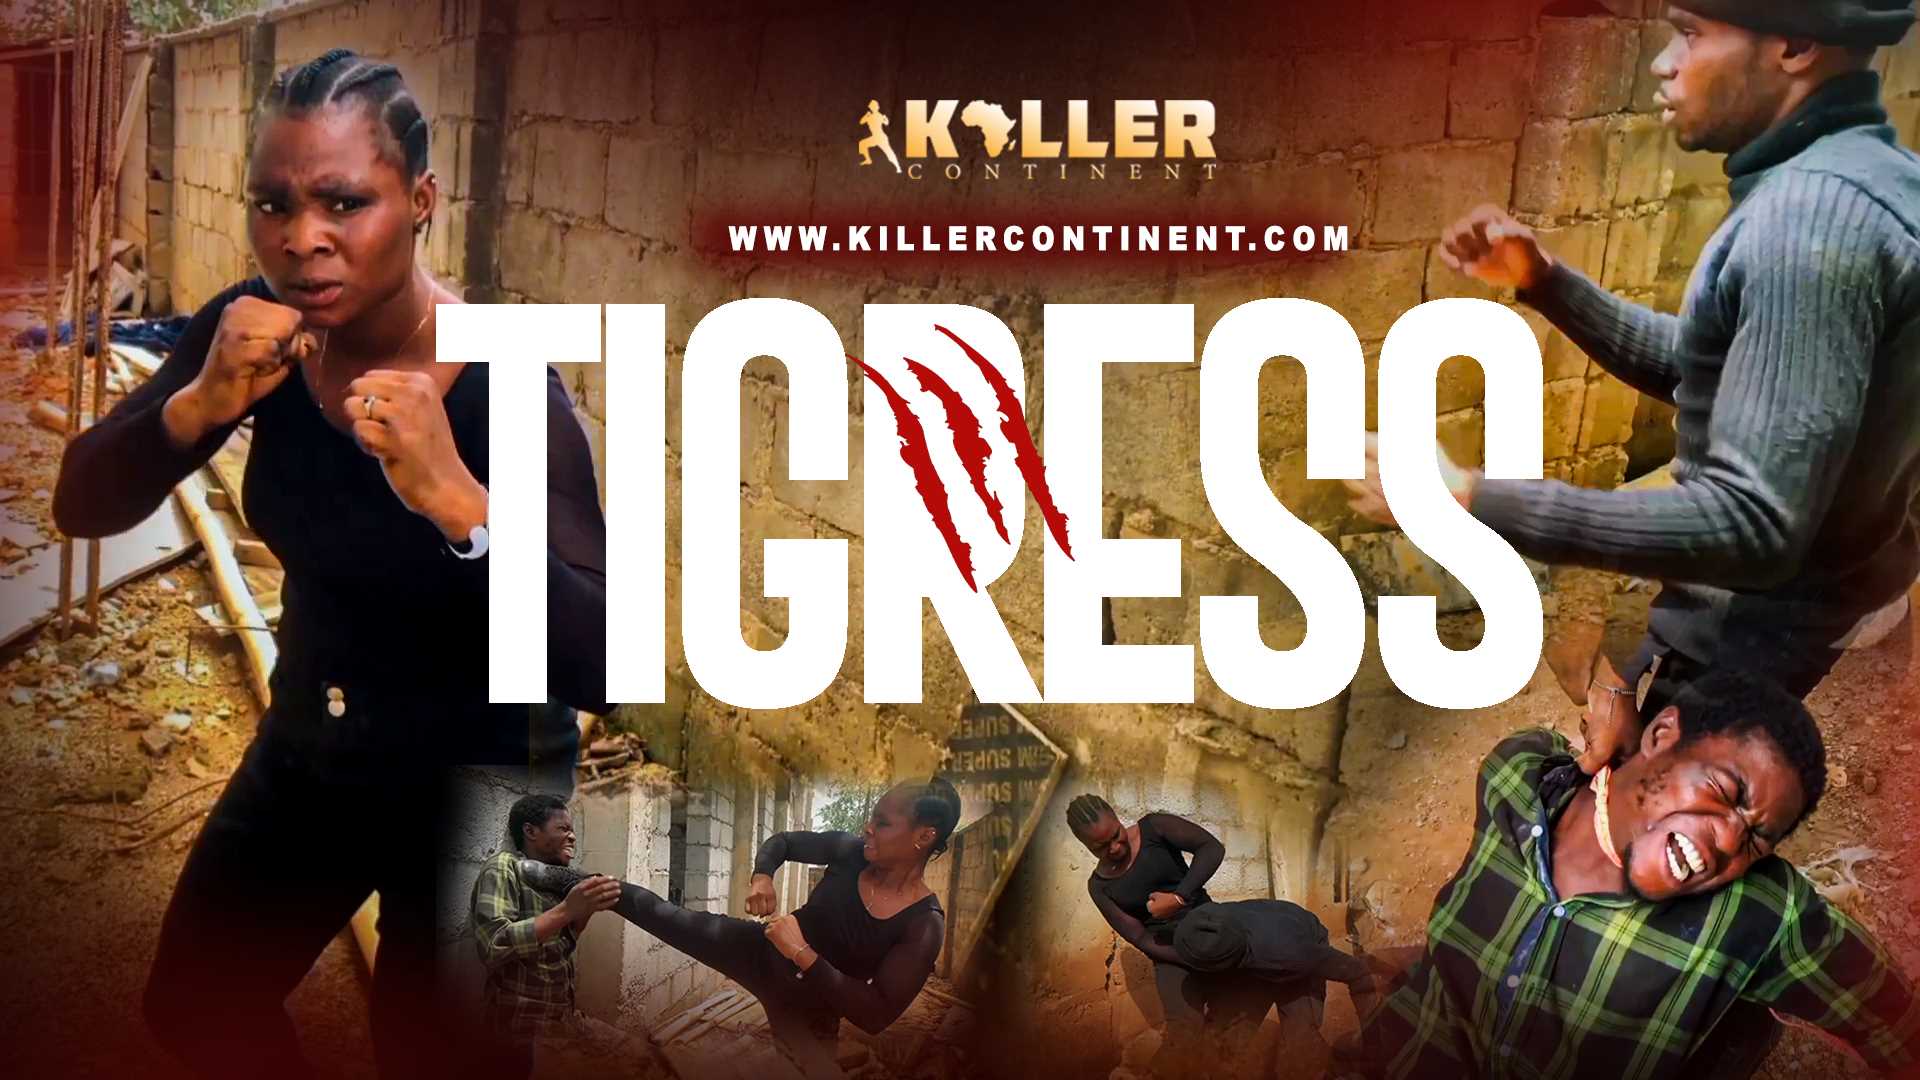 KillerContinent | Killer Continent | TIGRESS